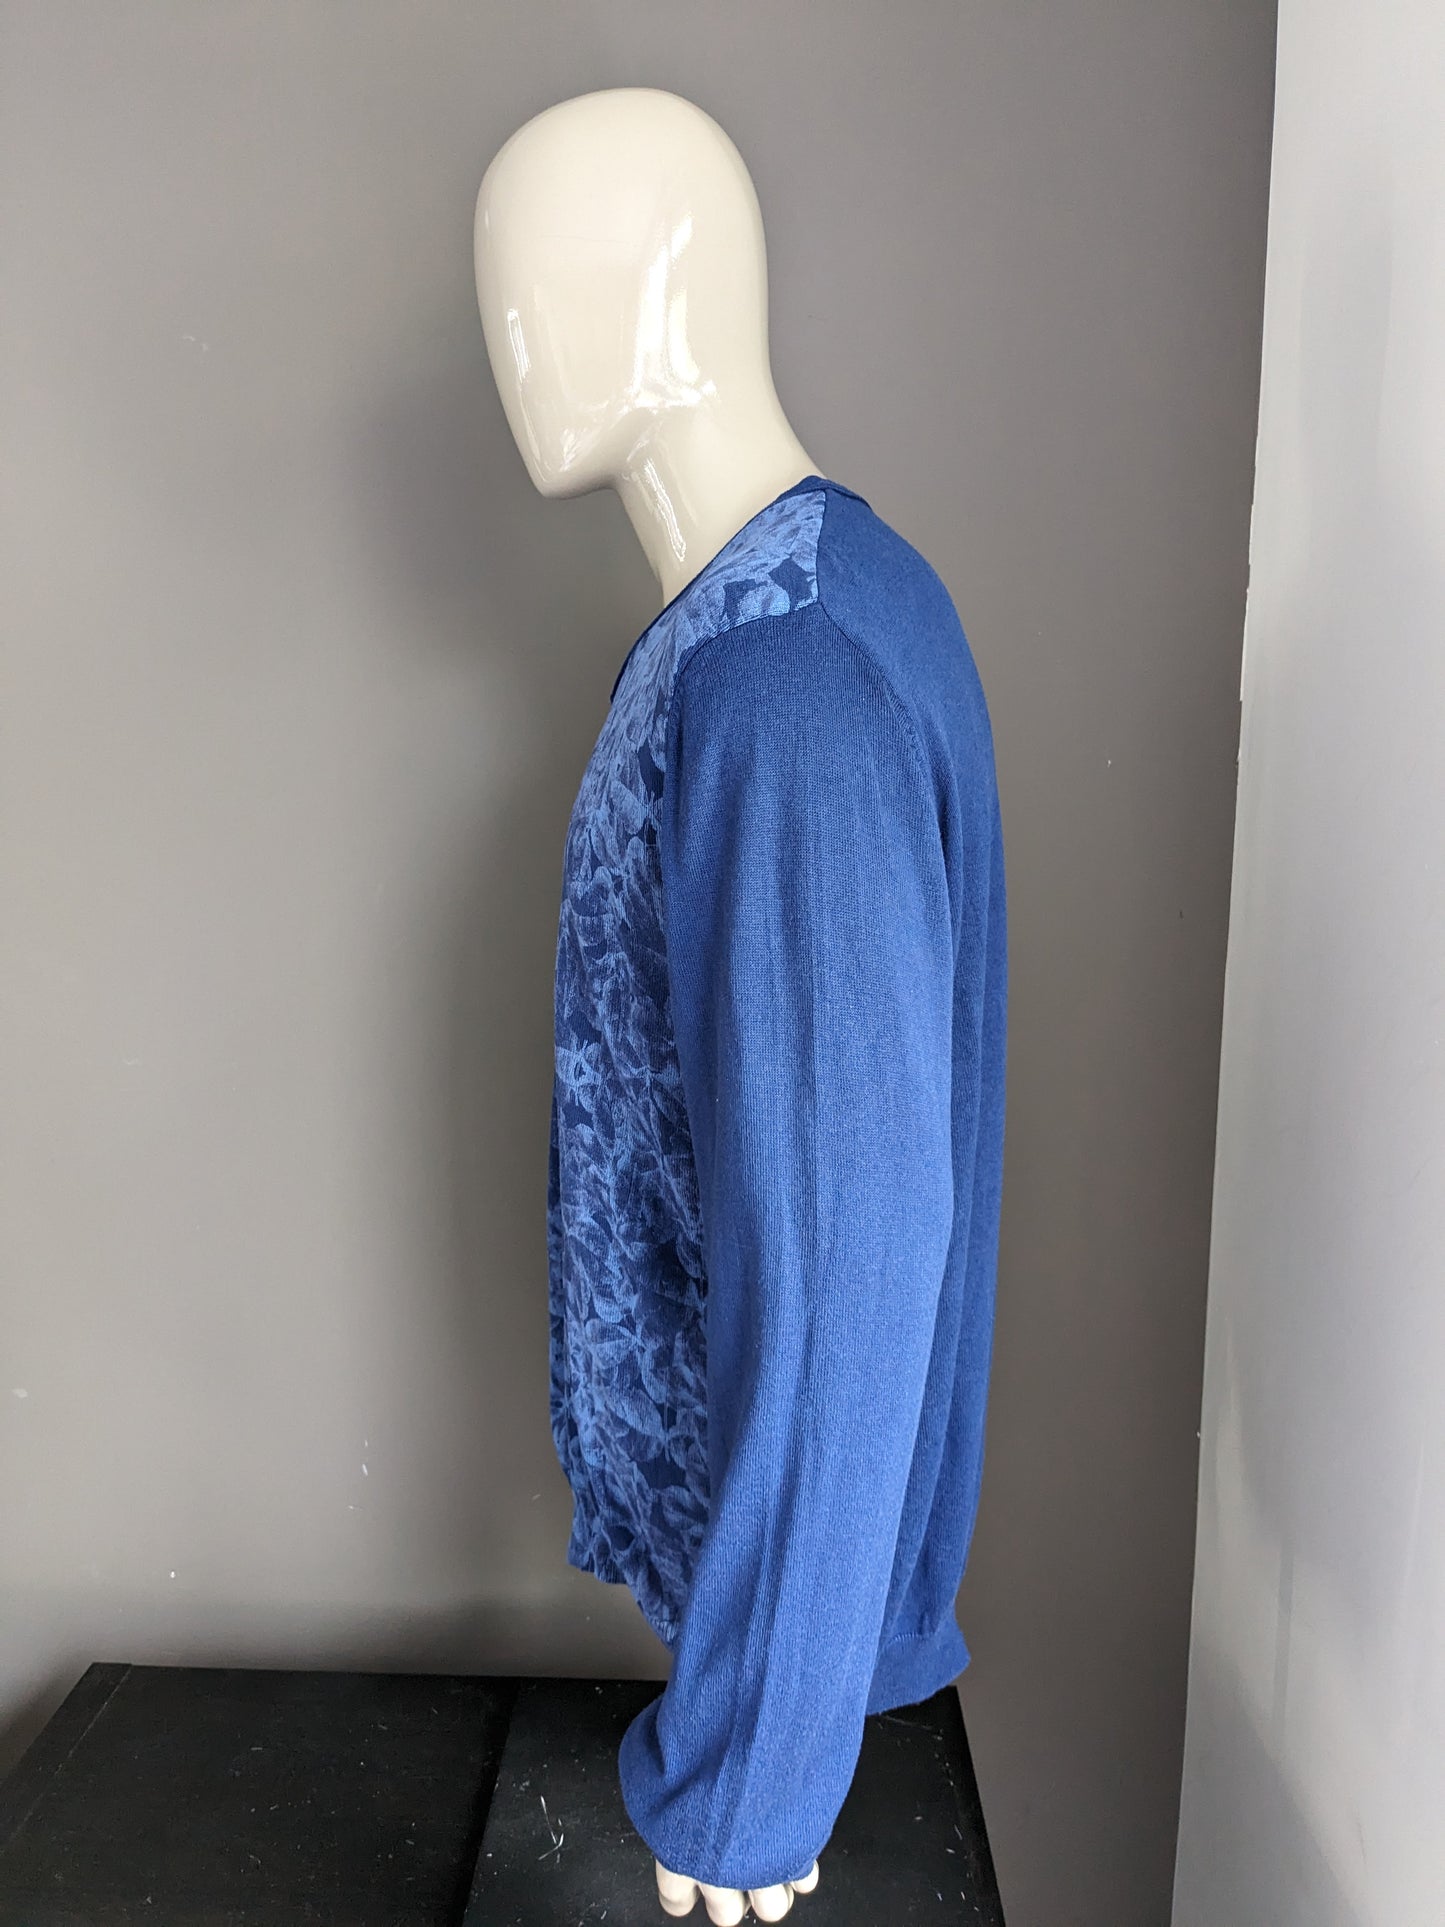 Suéter sin marca. Motivo de hoja azul. Tamaño XXL / 2XL.